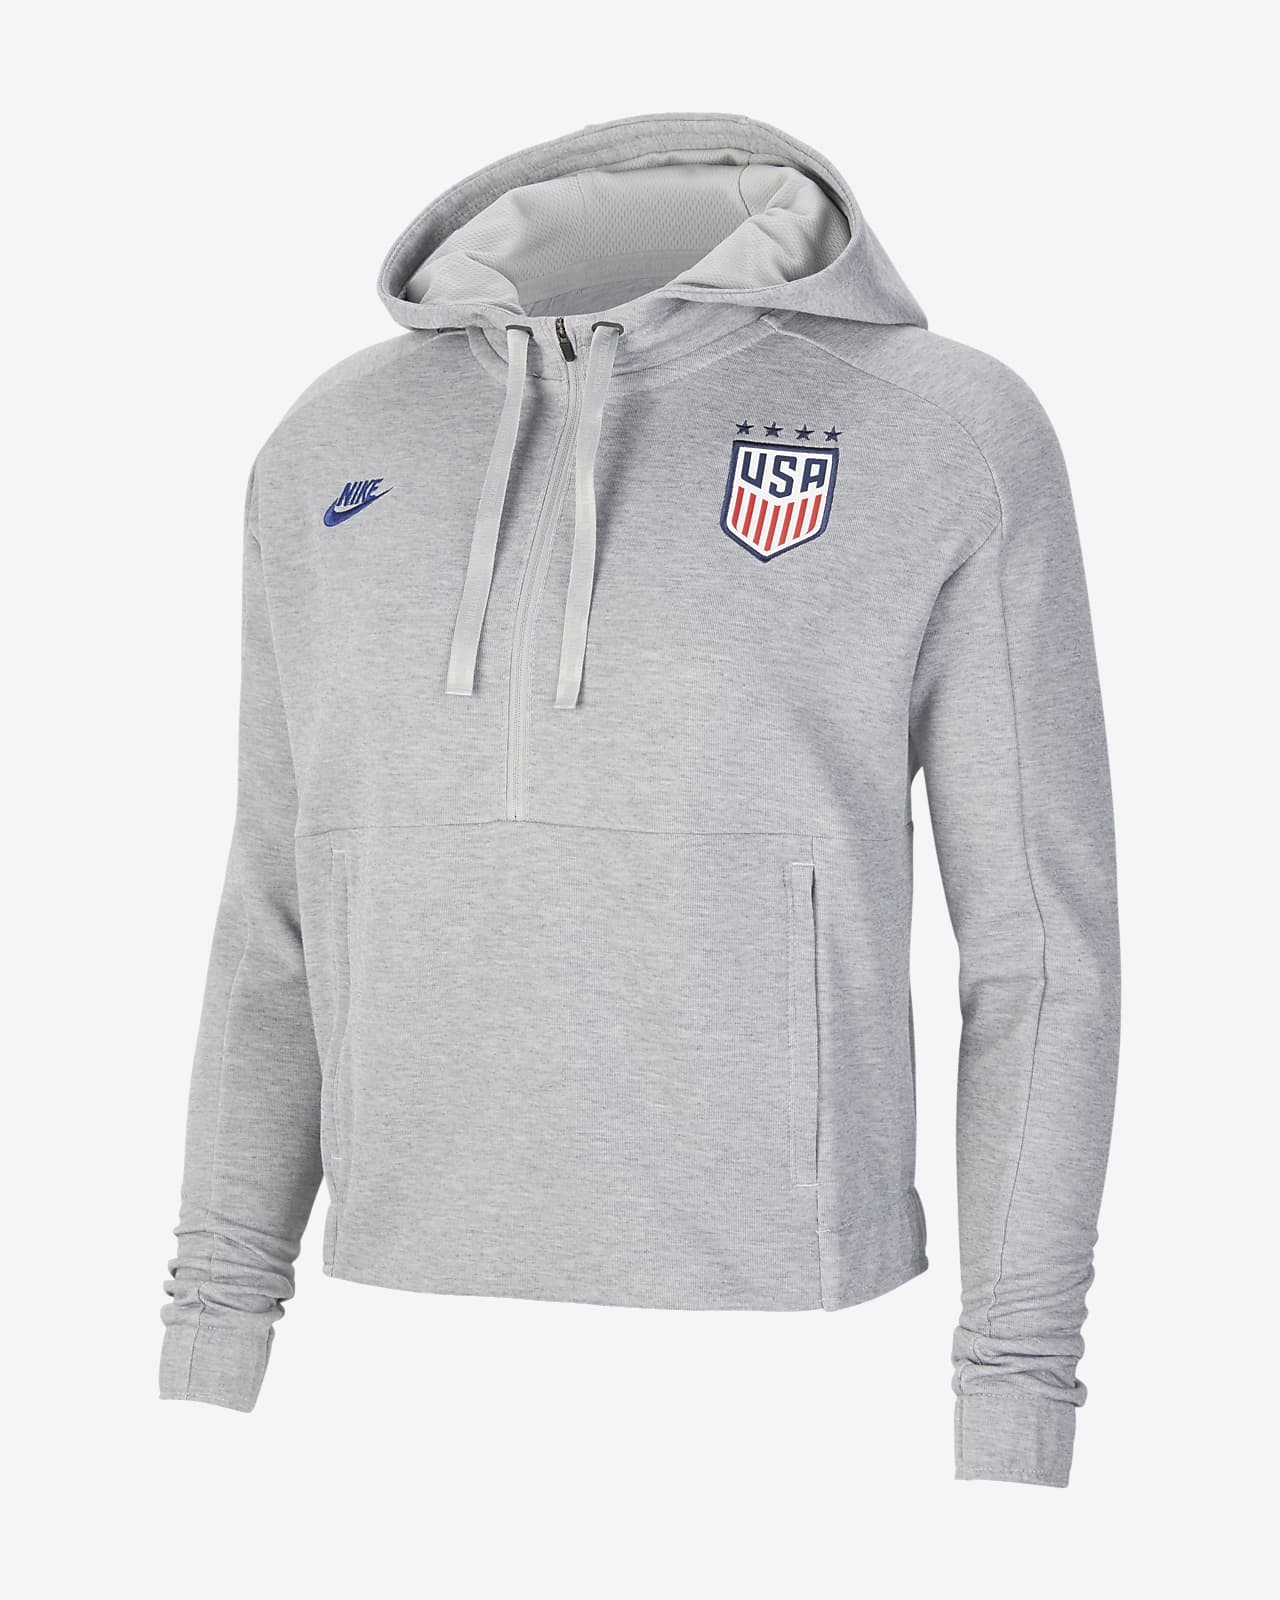 us women's soccer hoodie